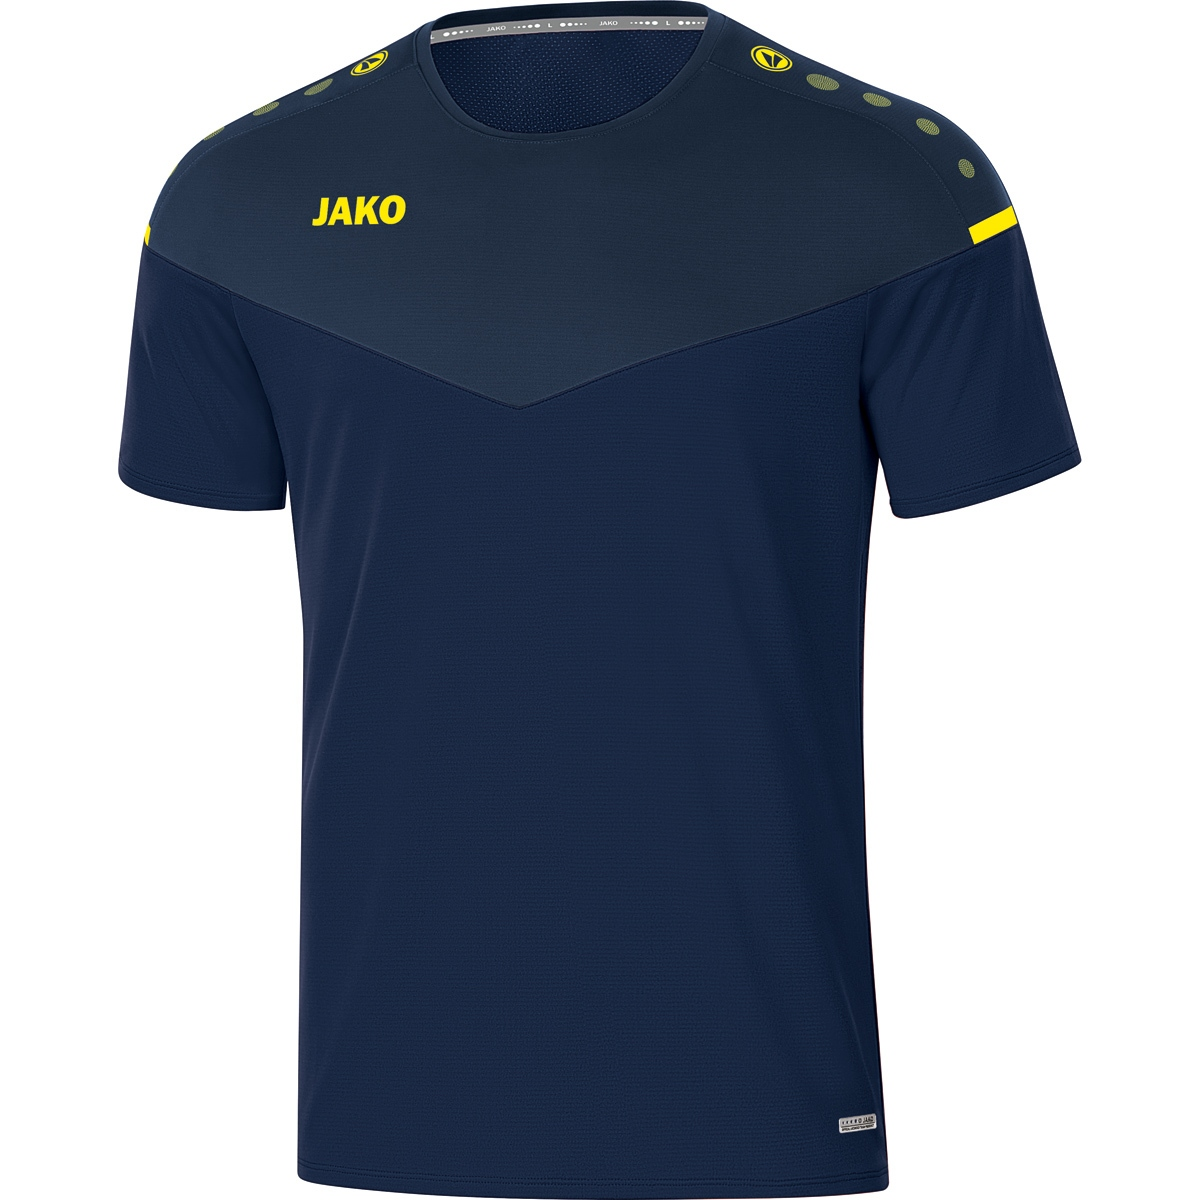 3XL, T-Shirt 6120 2.0 Gr. JAKO marine/darkblue/neongelb, Herren, Champ